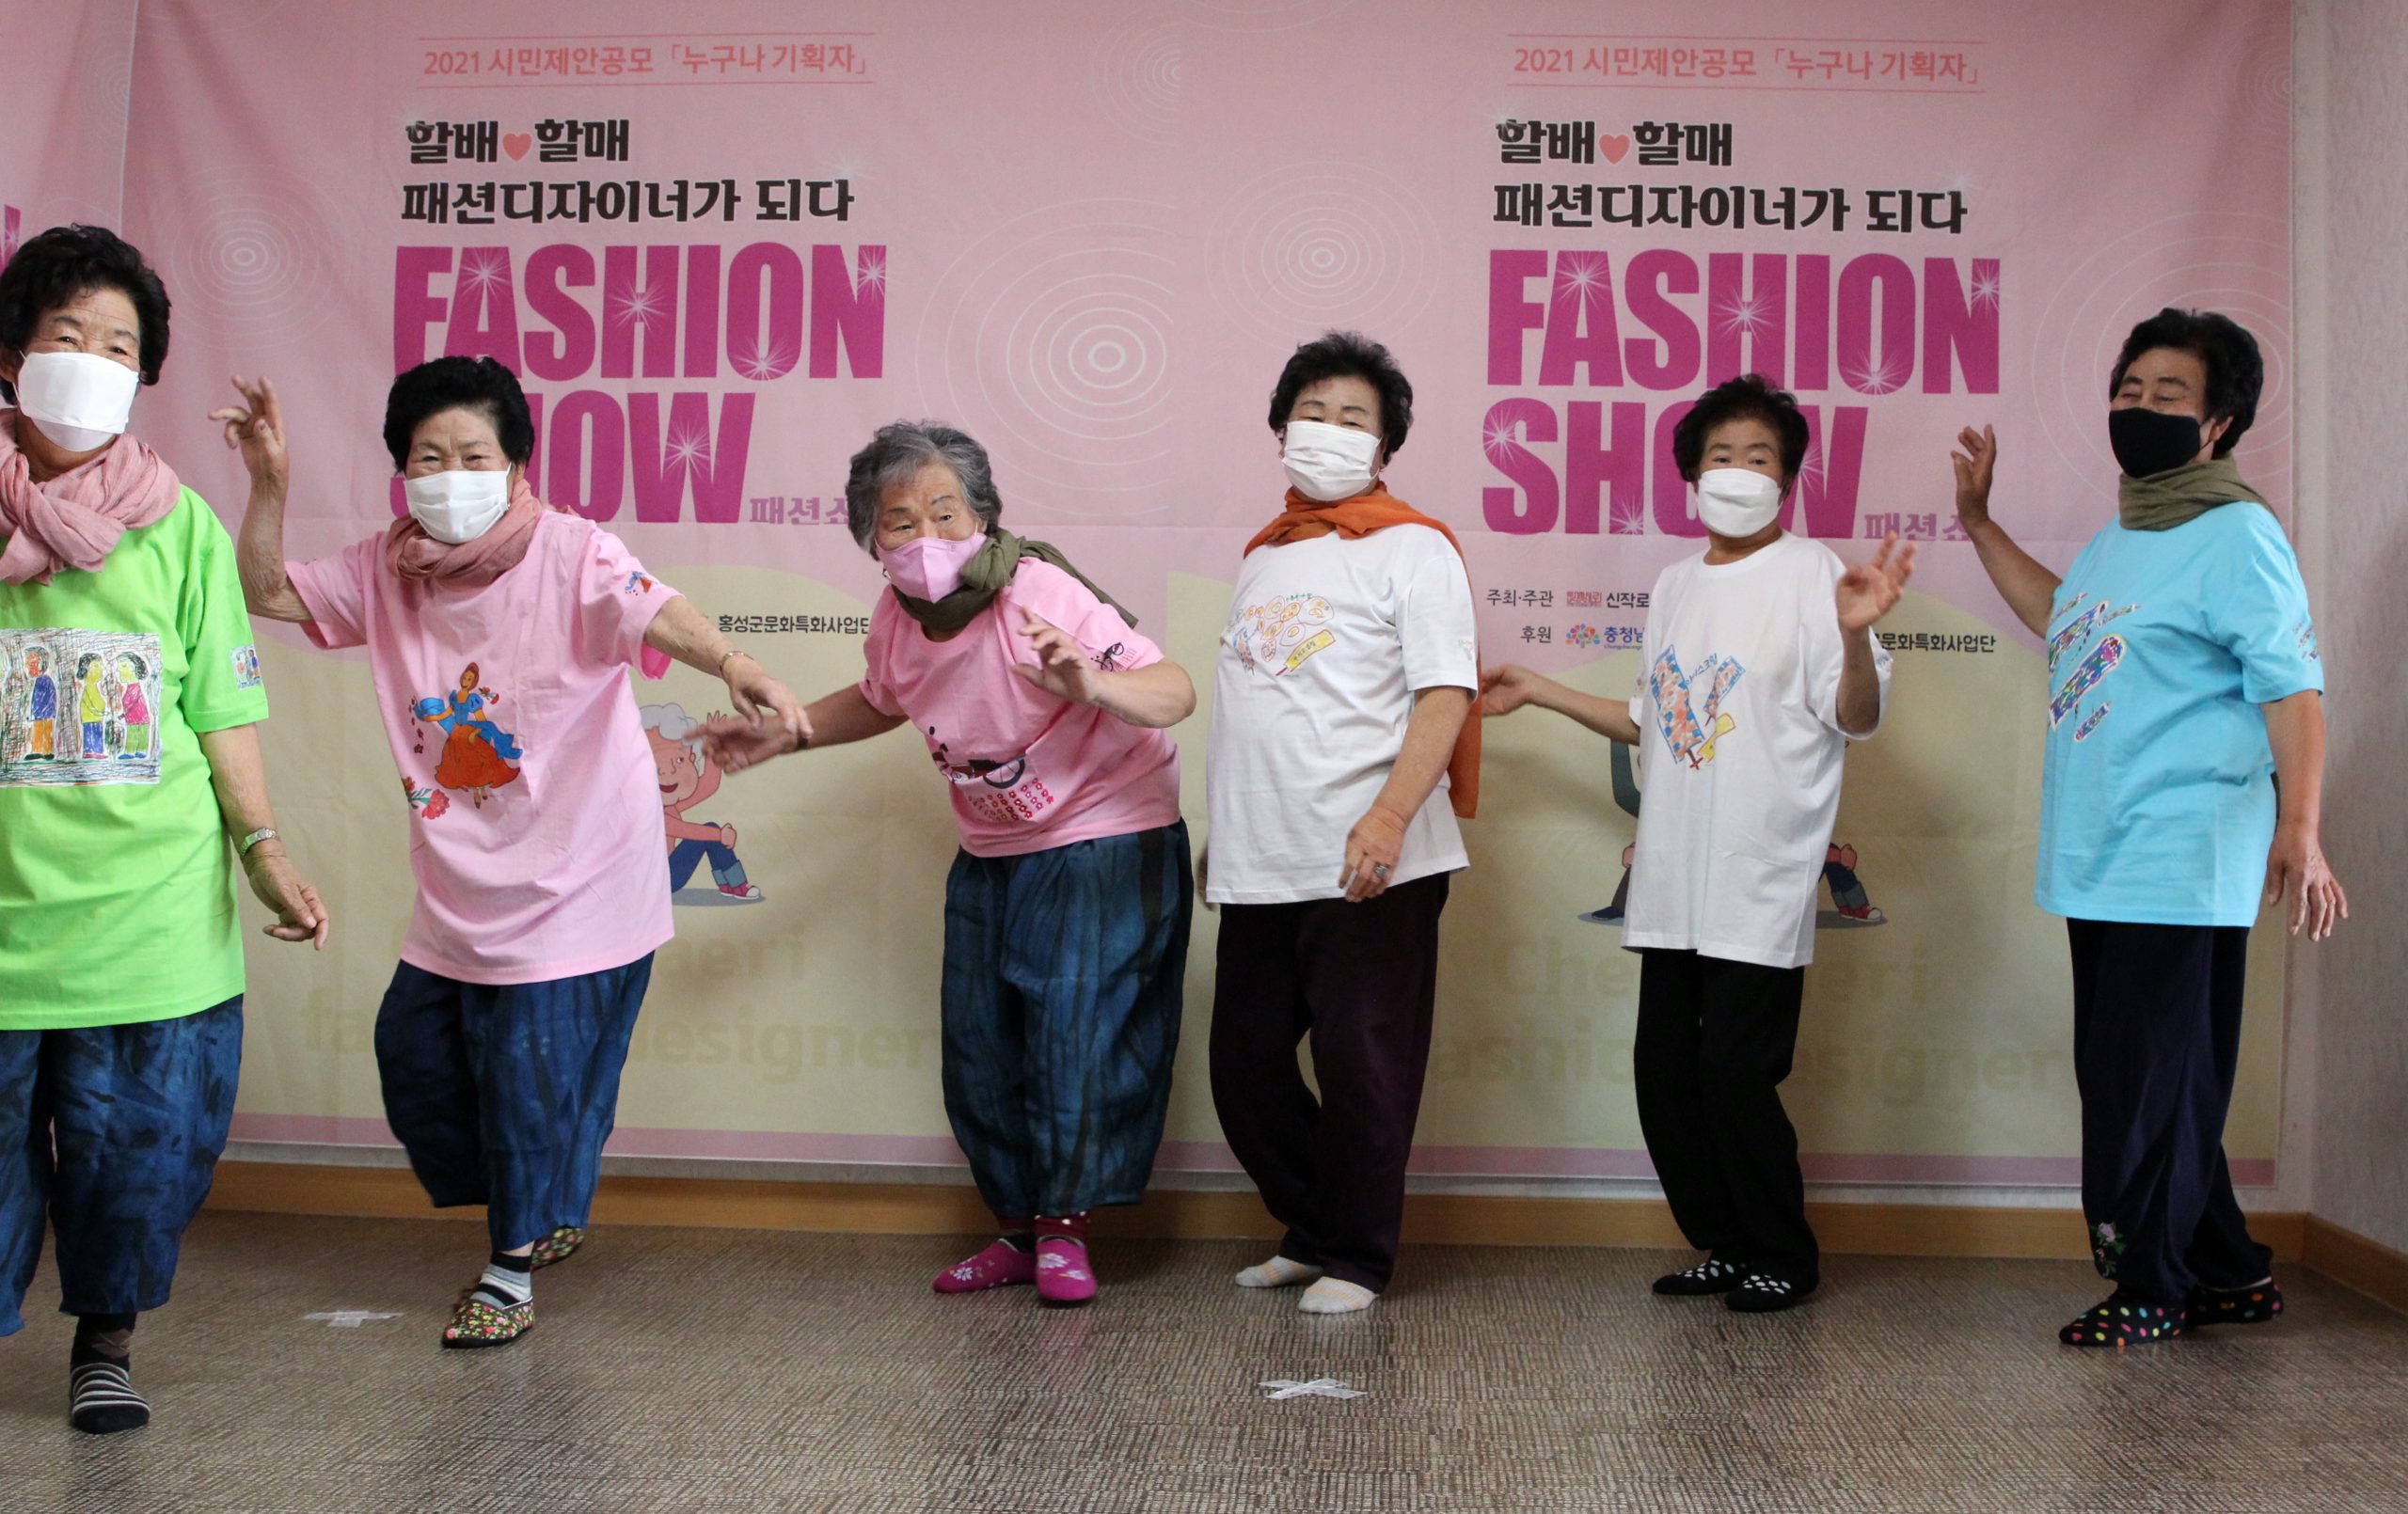 拚图两图∕乐龄人士服装秀SOUTH KOREA FASHION:Fashion show at village in Hongseong